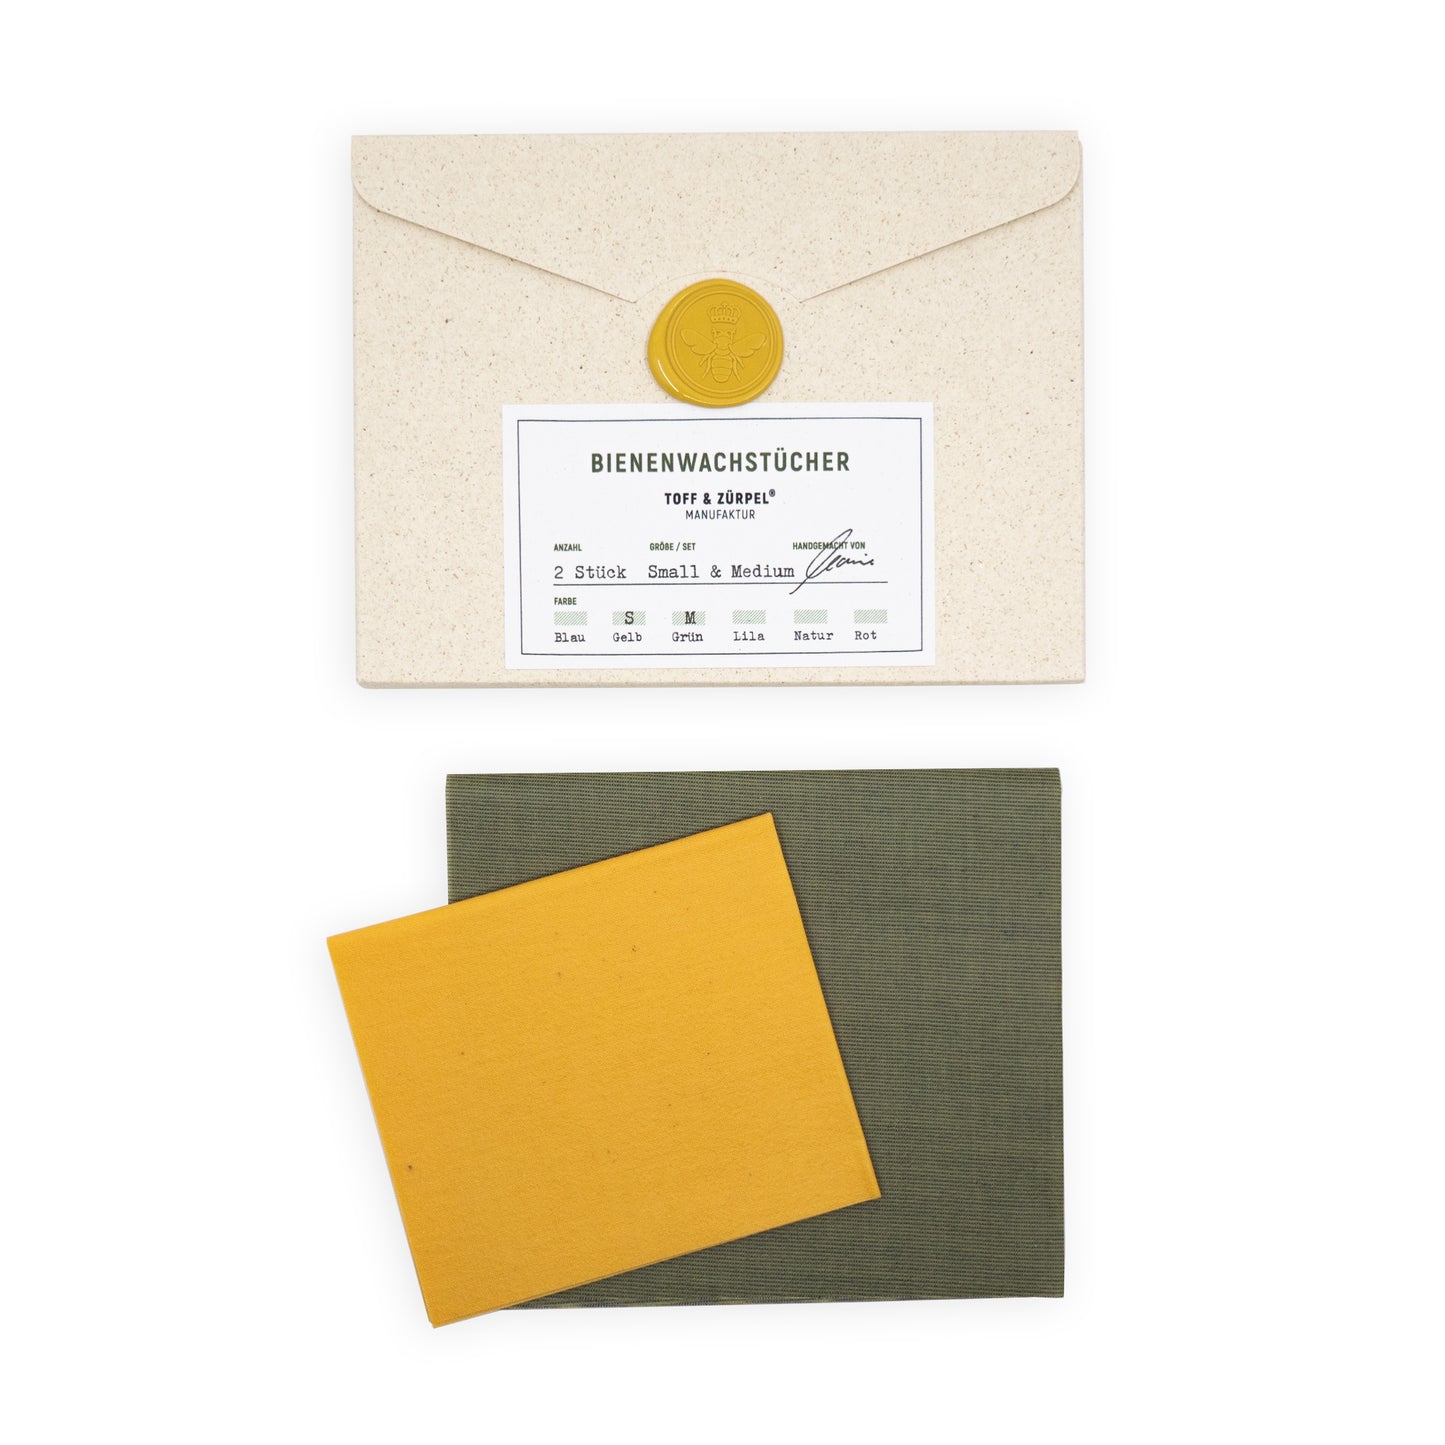 TOFF & ZÜRPEL®  SET Bienenwachstücher S (gelb, 21x18cm) & M (grün, 28x24cm) | 2 Stück